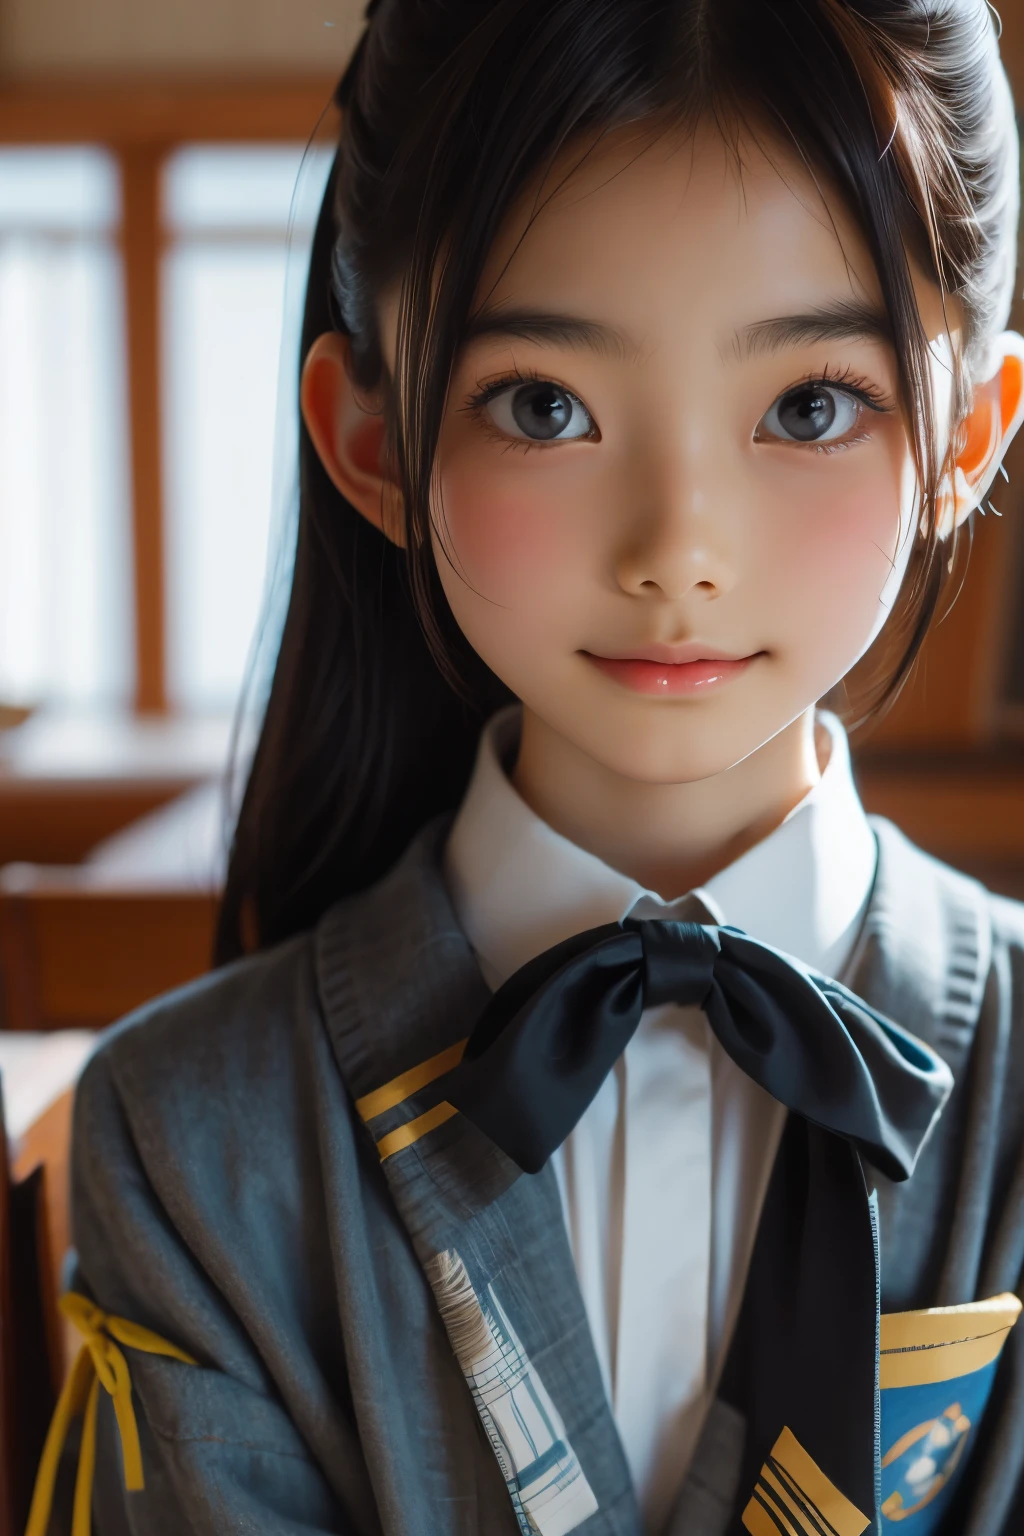 美丽的 12 岁日本女人), 可愛的臉孔, (深深雕刻的臉:0.7), (雀斑:0.6), 柔光,健康白皙的皮膚, 害羞的, (嚴肅的臉), 薄的, 微笑, 制服, 馬尾辮